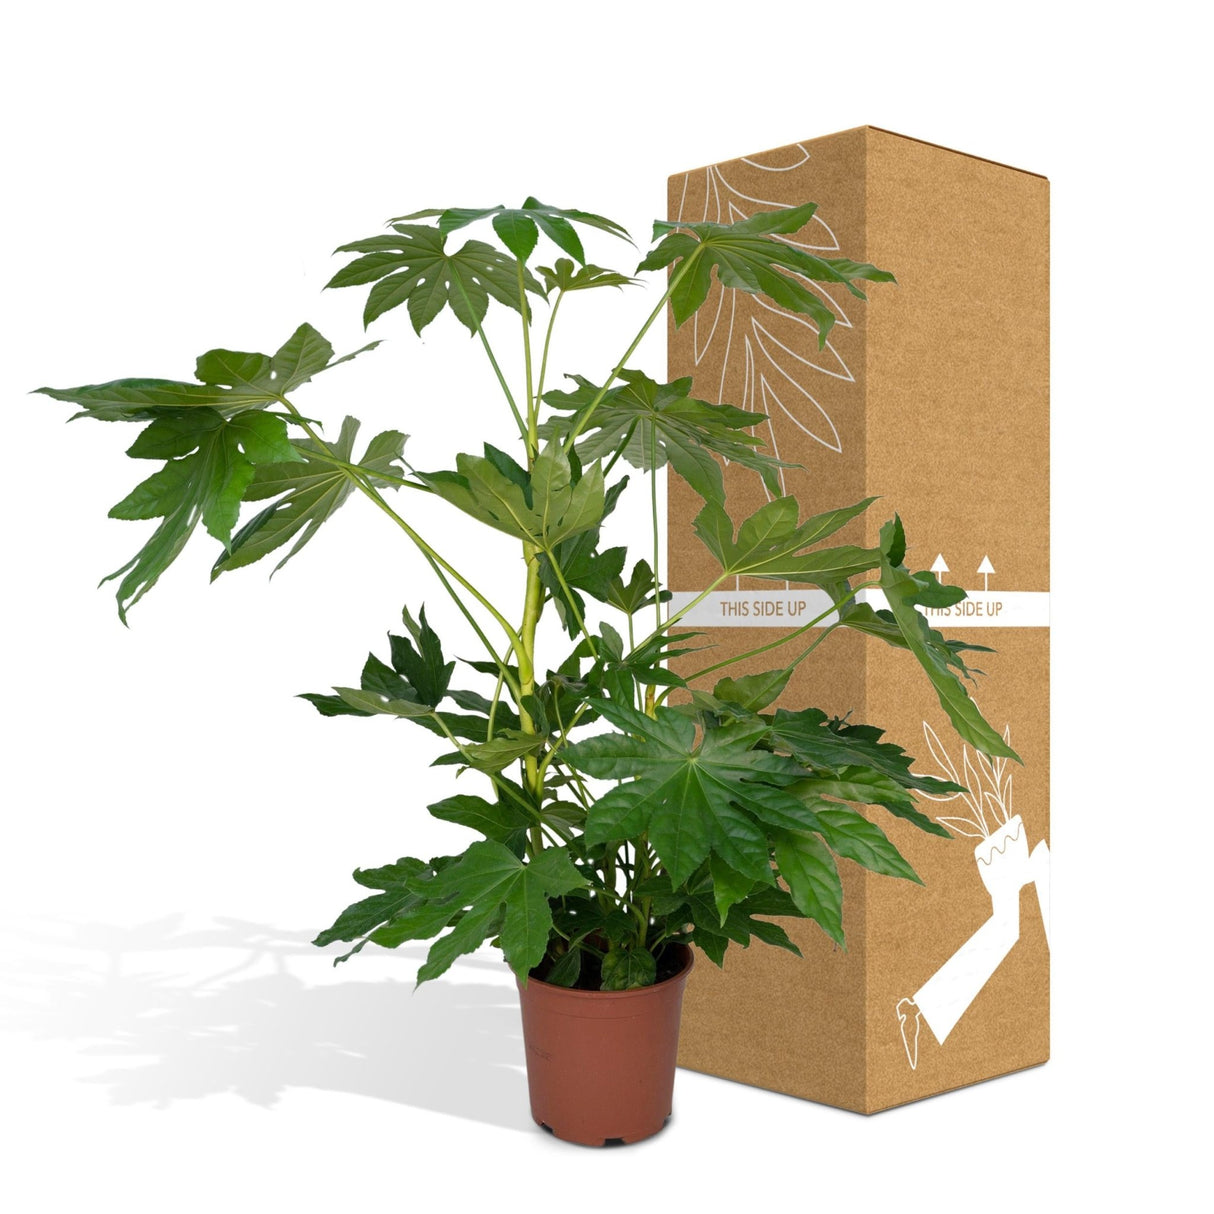 Livraison plante - Fatsia japonica vert - h85cm, Ø21cm - grande plante d'intérieur